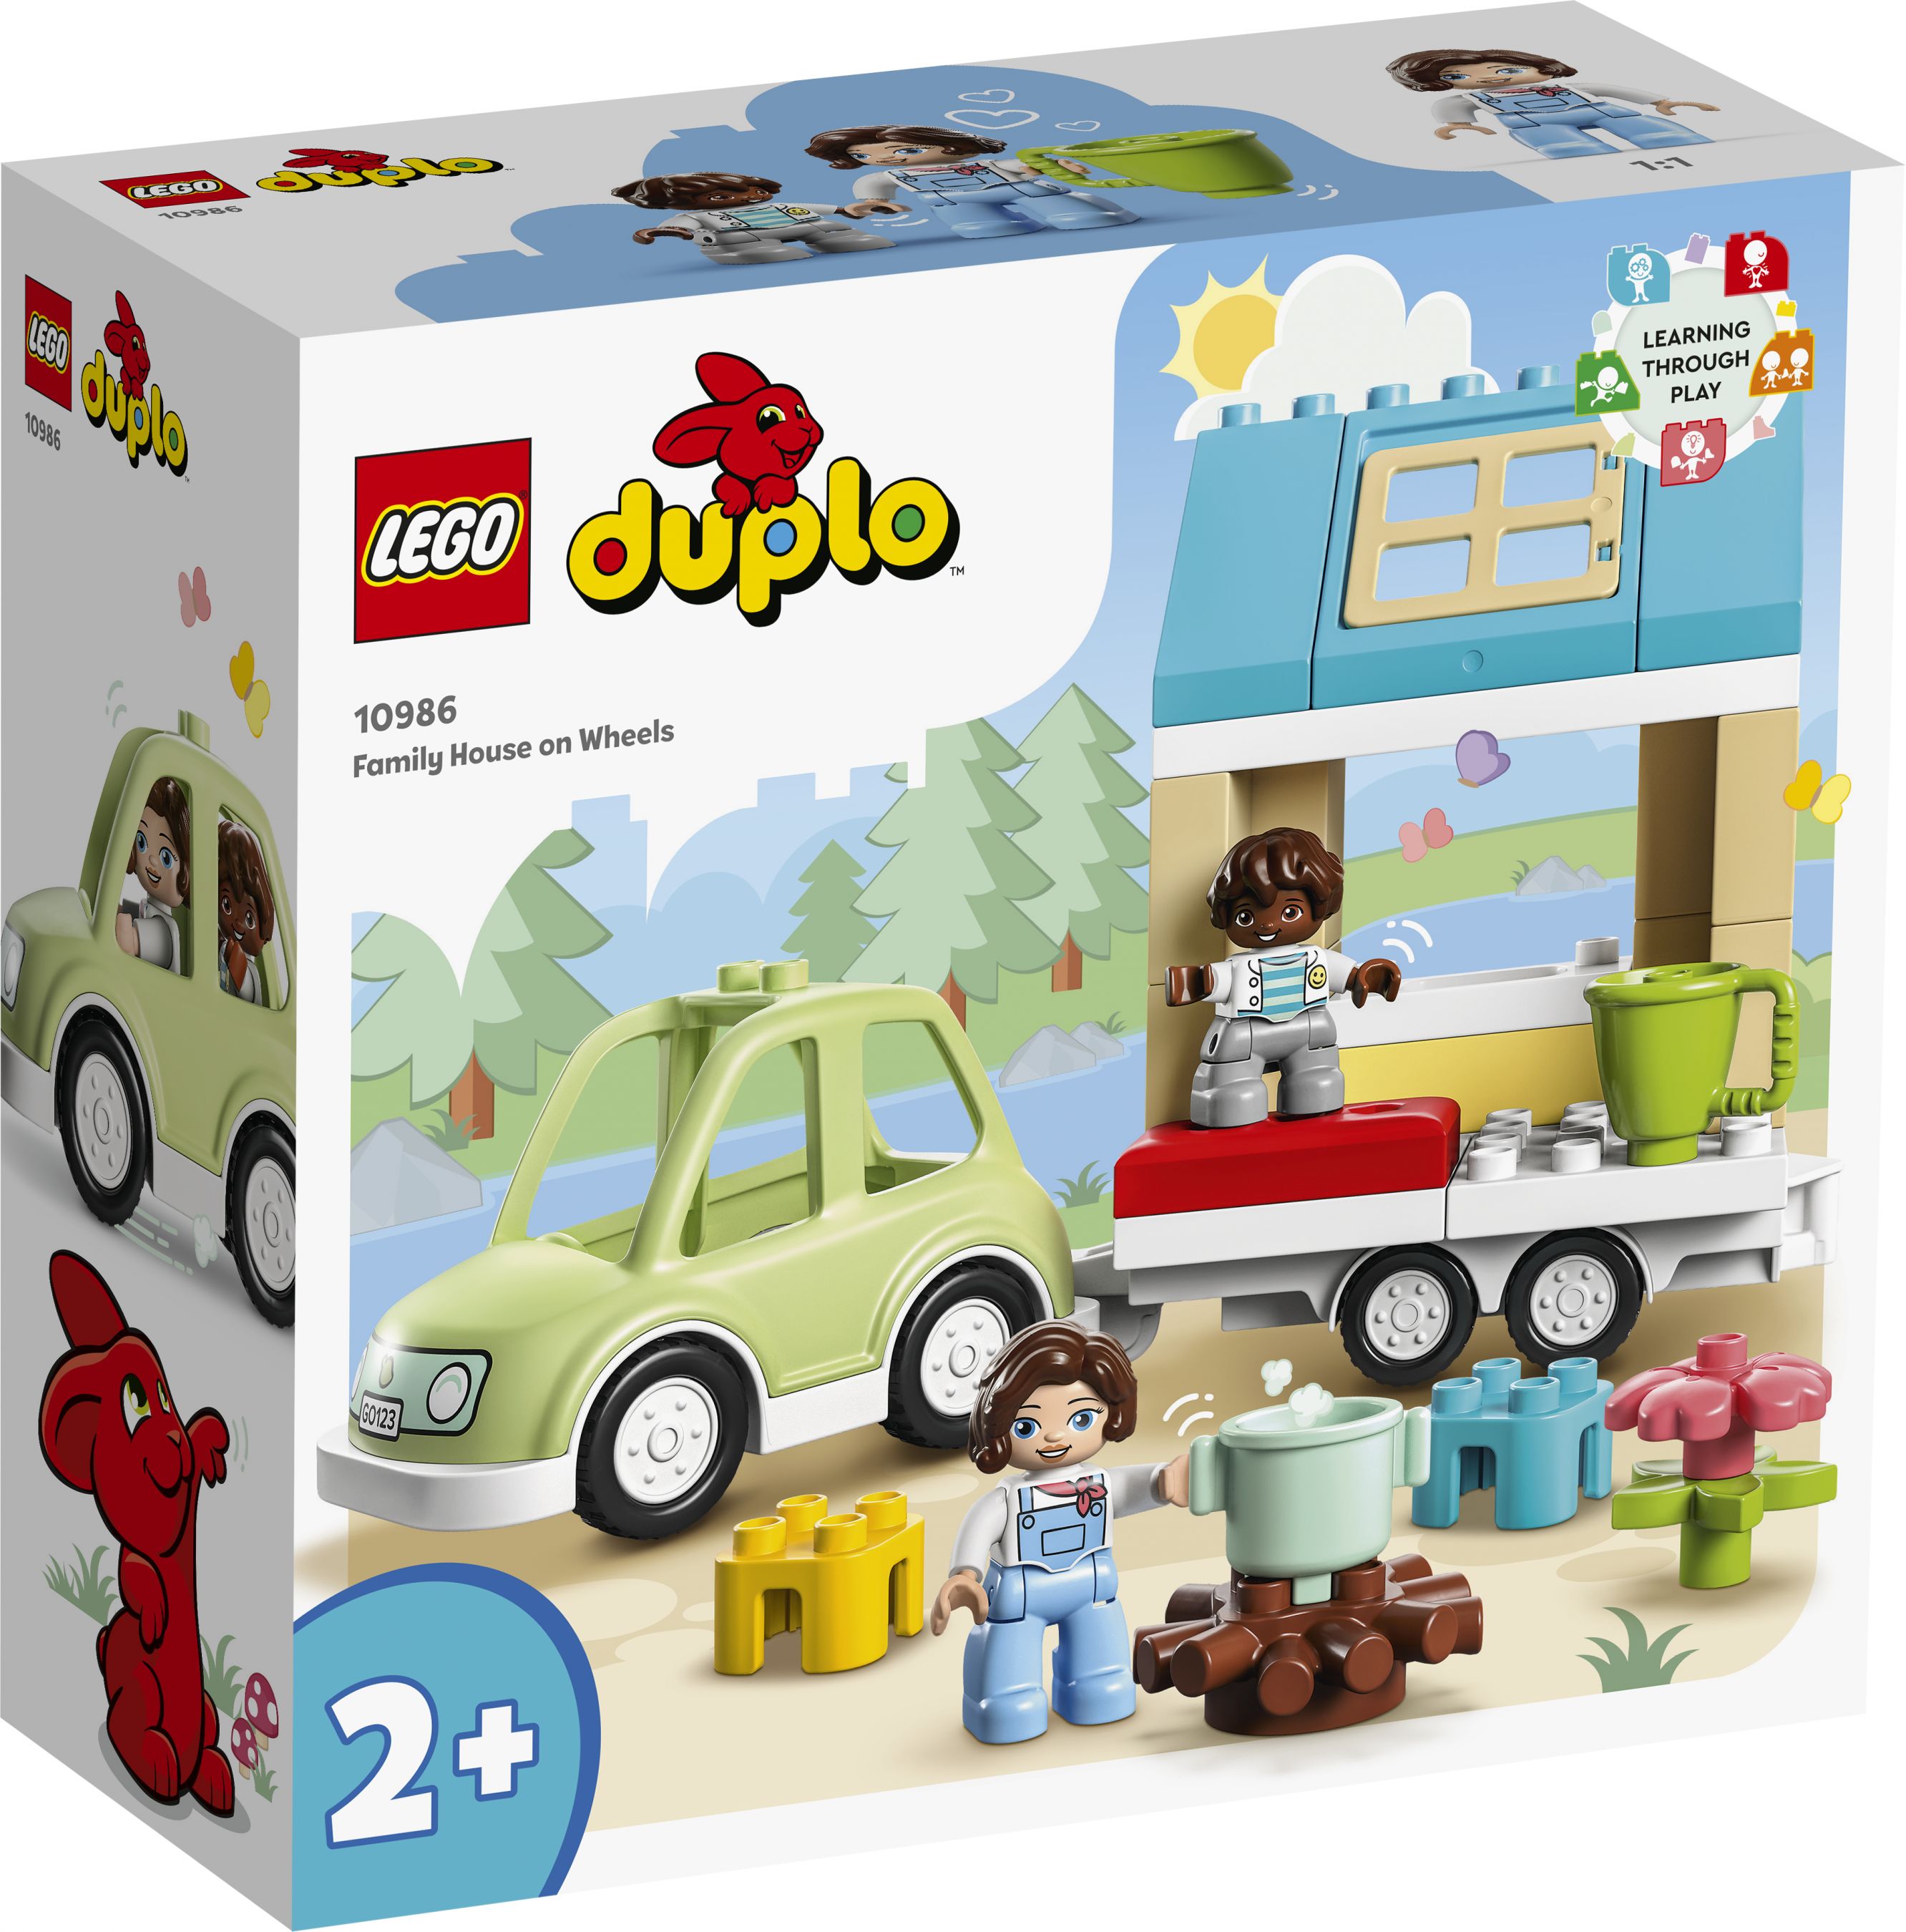 LEGO Duplo 10986 Zuhause auf Rädern LEGO_10986_Box1_v29.jpg